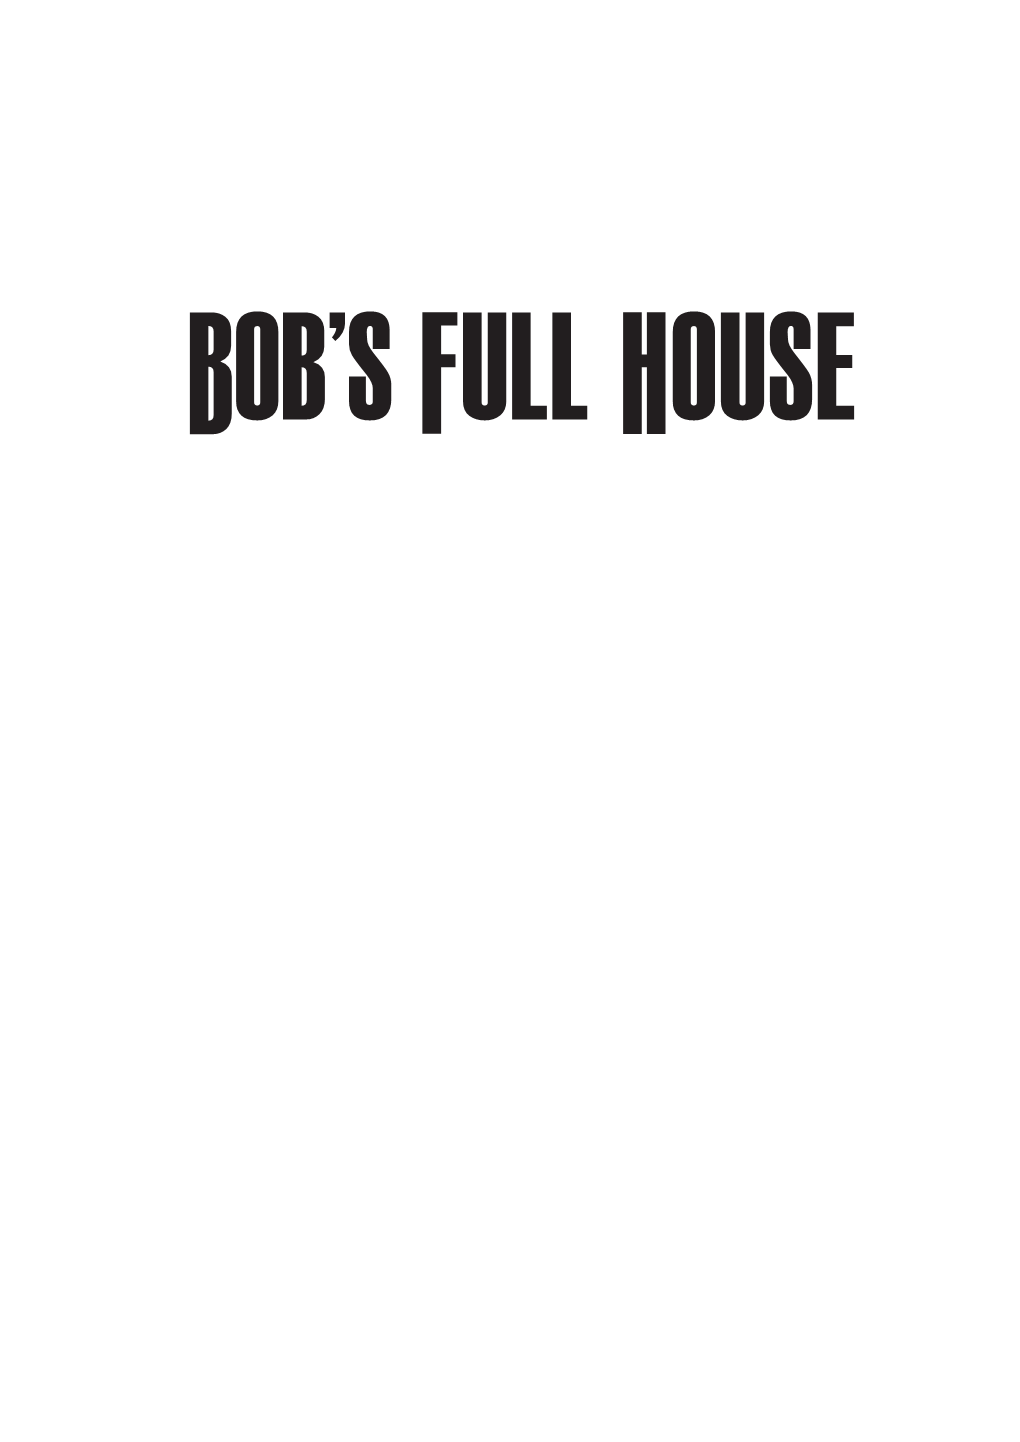 Books-Bobsfullhouse-Taster.Pdf